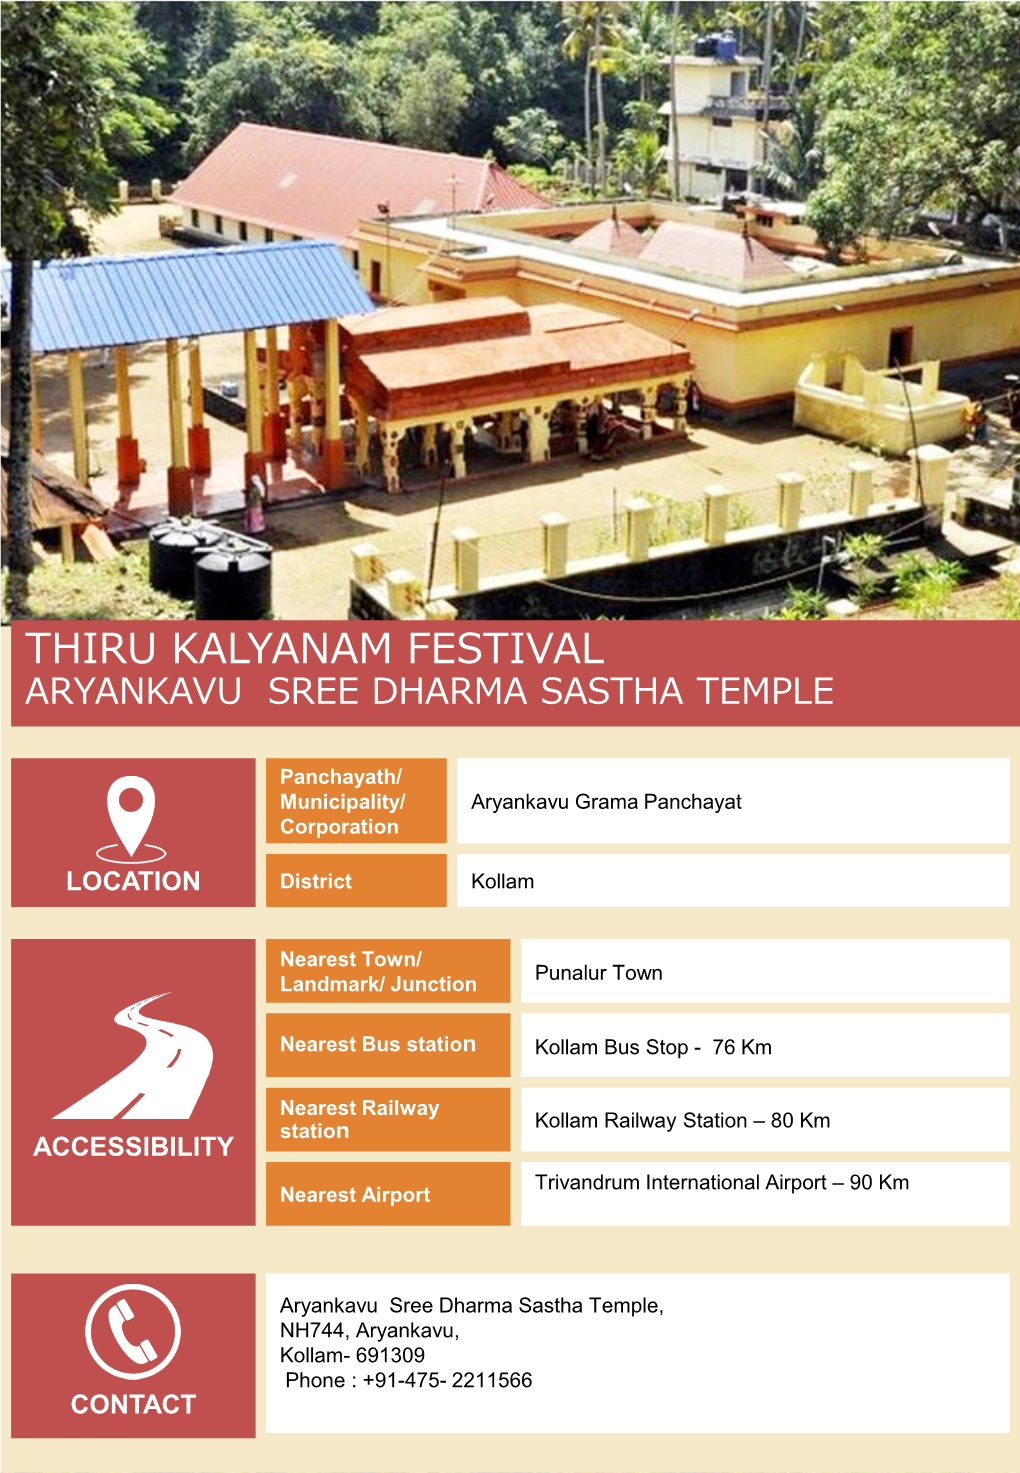 Thiru Kalyanam Festival Aryankavu Sree Dharma Sastha Temple